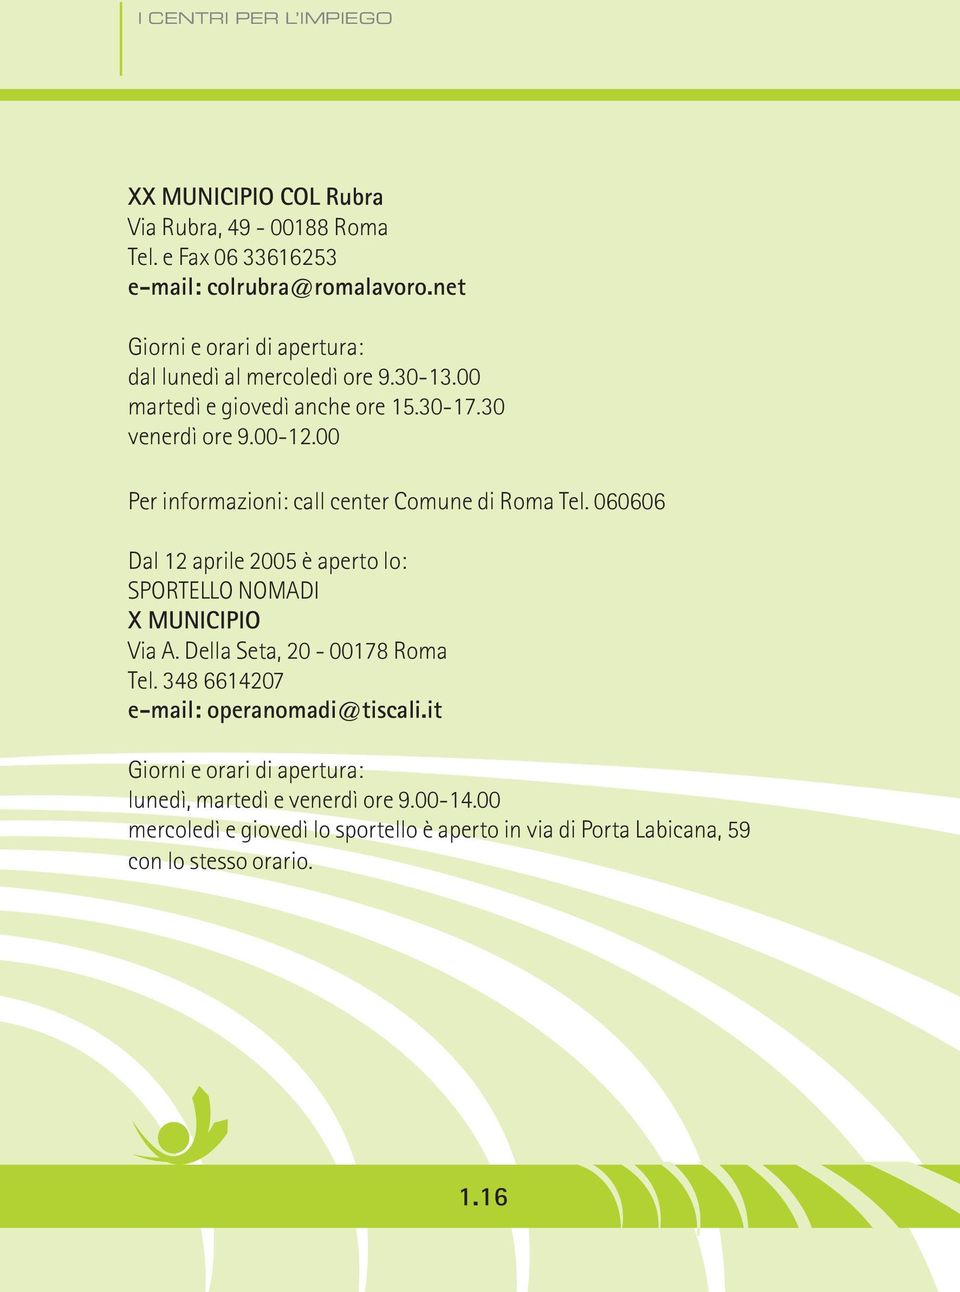 00 Per informazioni: call center Comune di Roma Tel. 060606 Dal 12 aprile 2005 è aperto lo: SPORTELLO NOMADI X MUNICIPIO Via A.